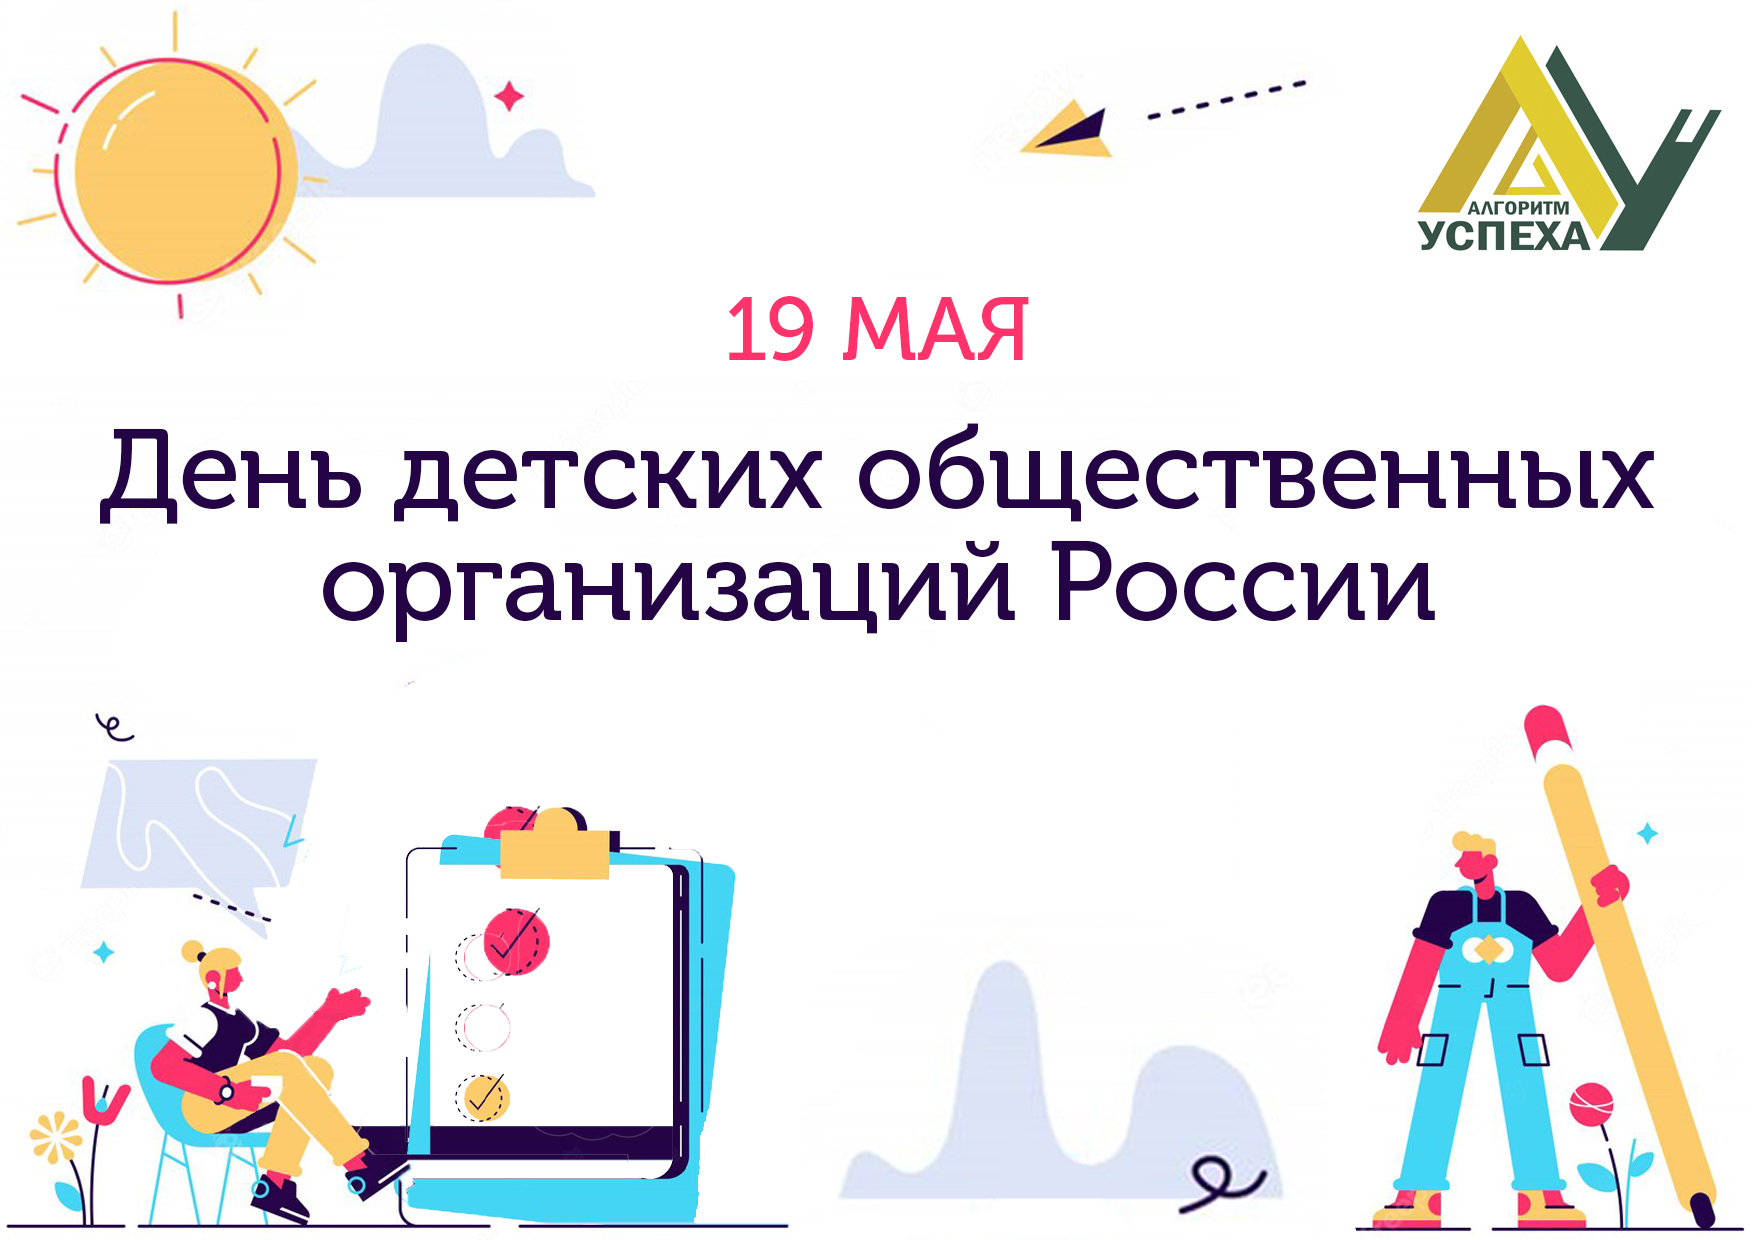 19 мая в Российской Федерации отмечается День детских общественных организаций и объединений